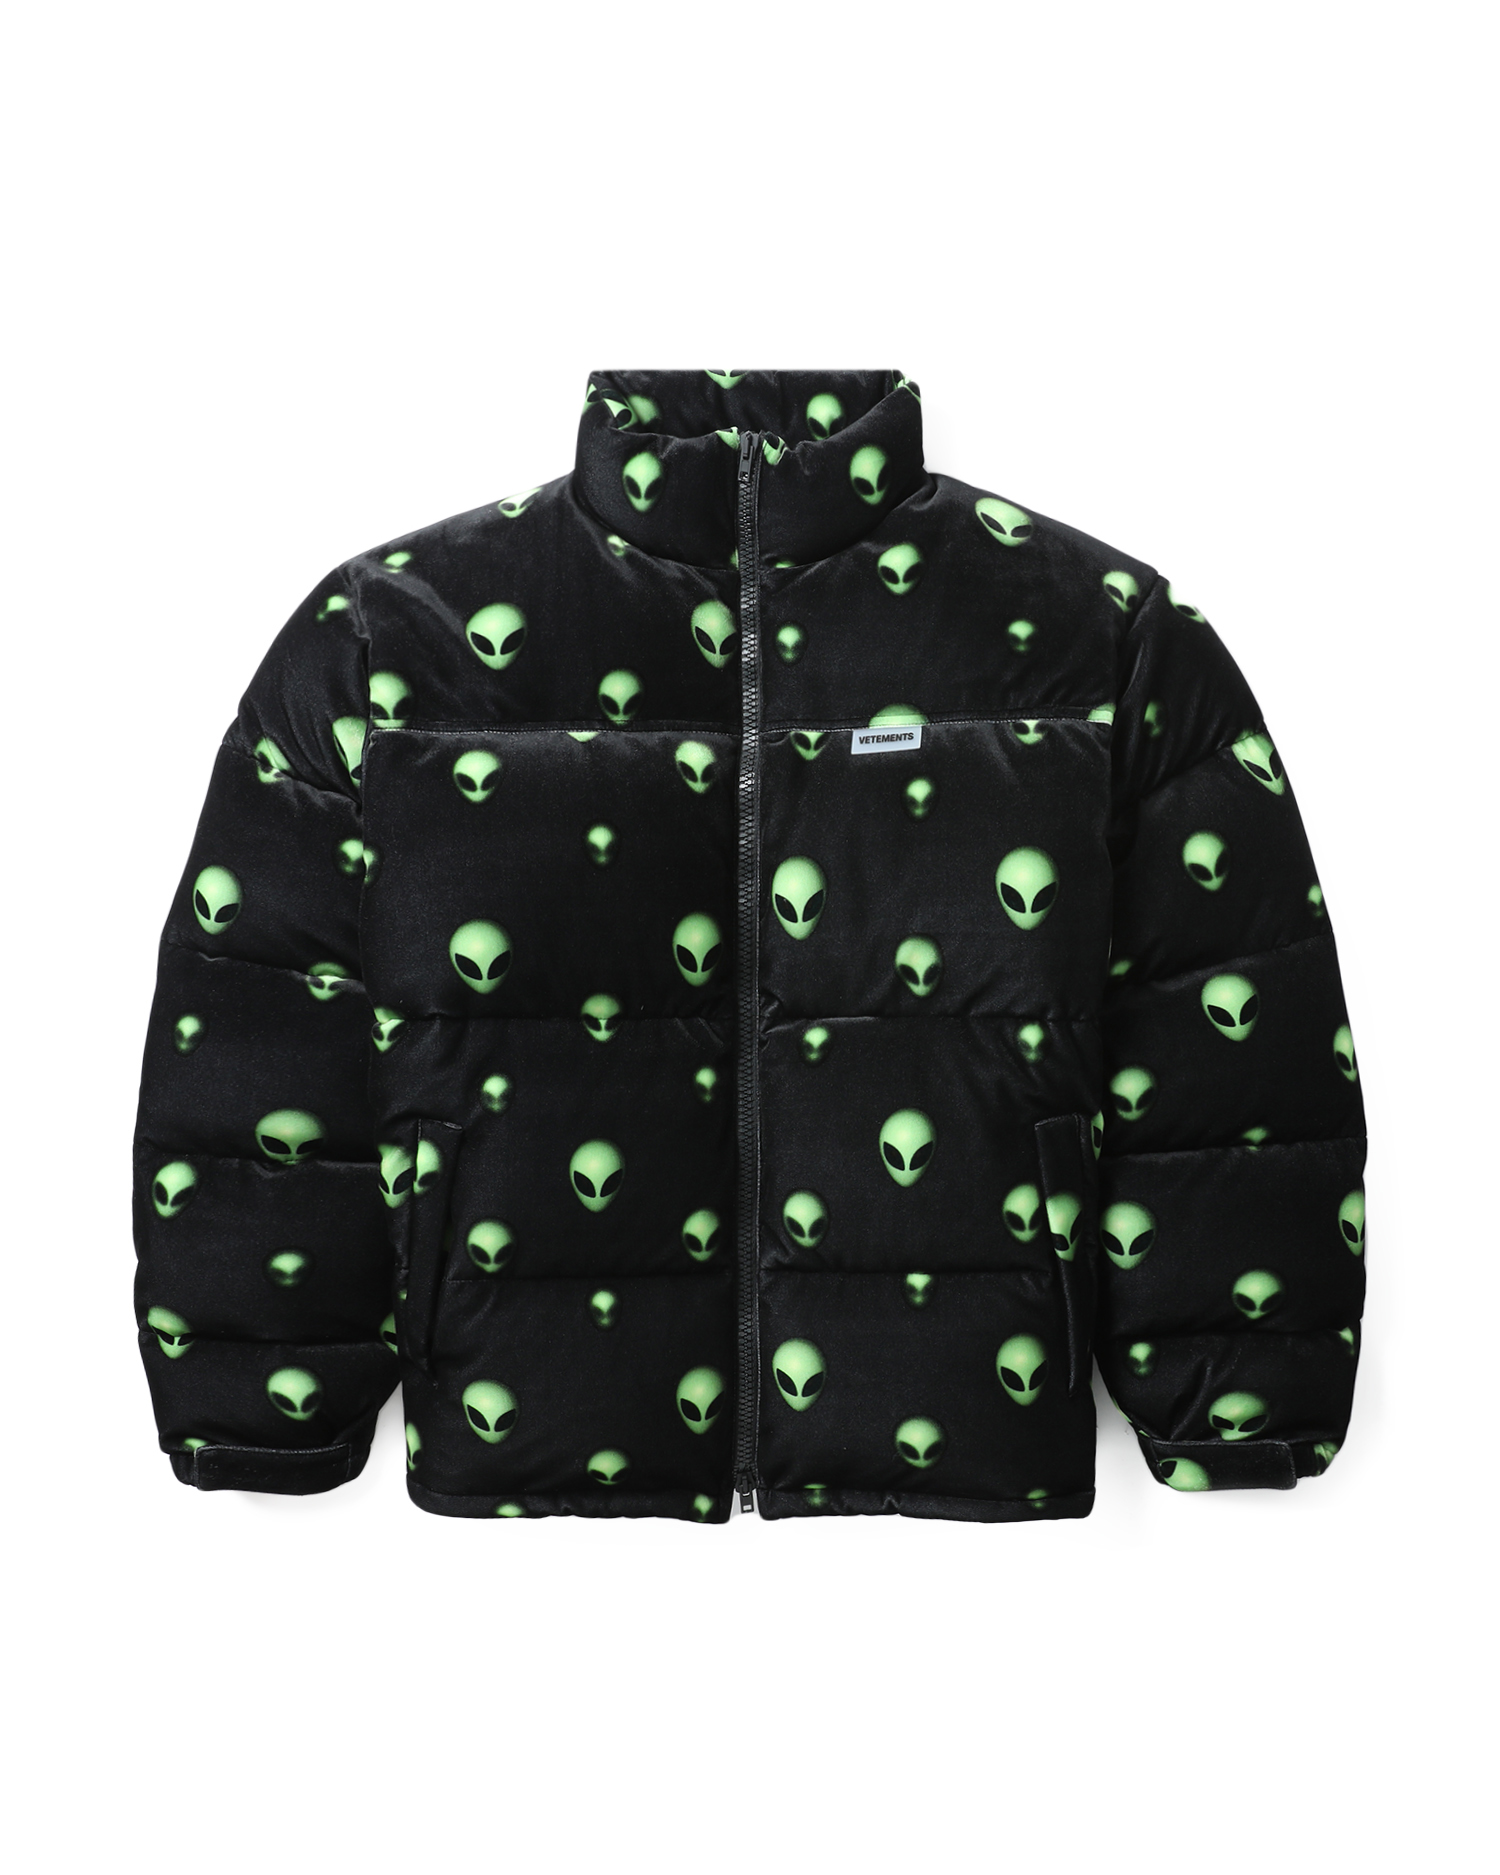 extraterrestrial velvet puffer jacket